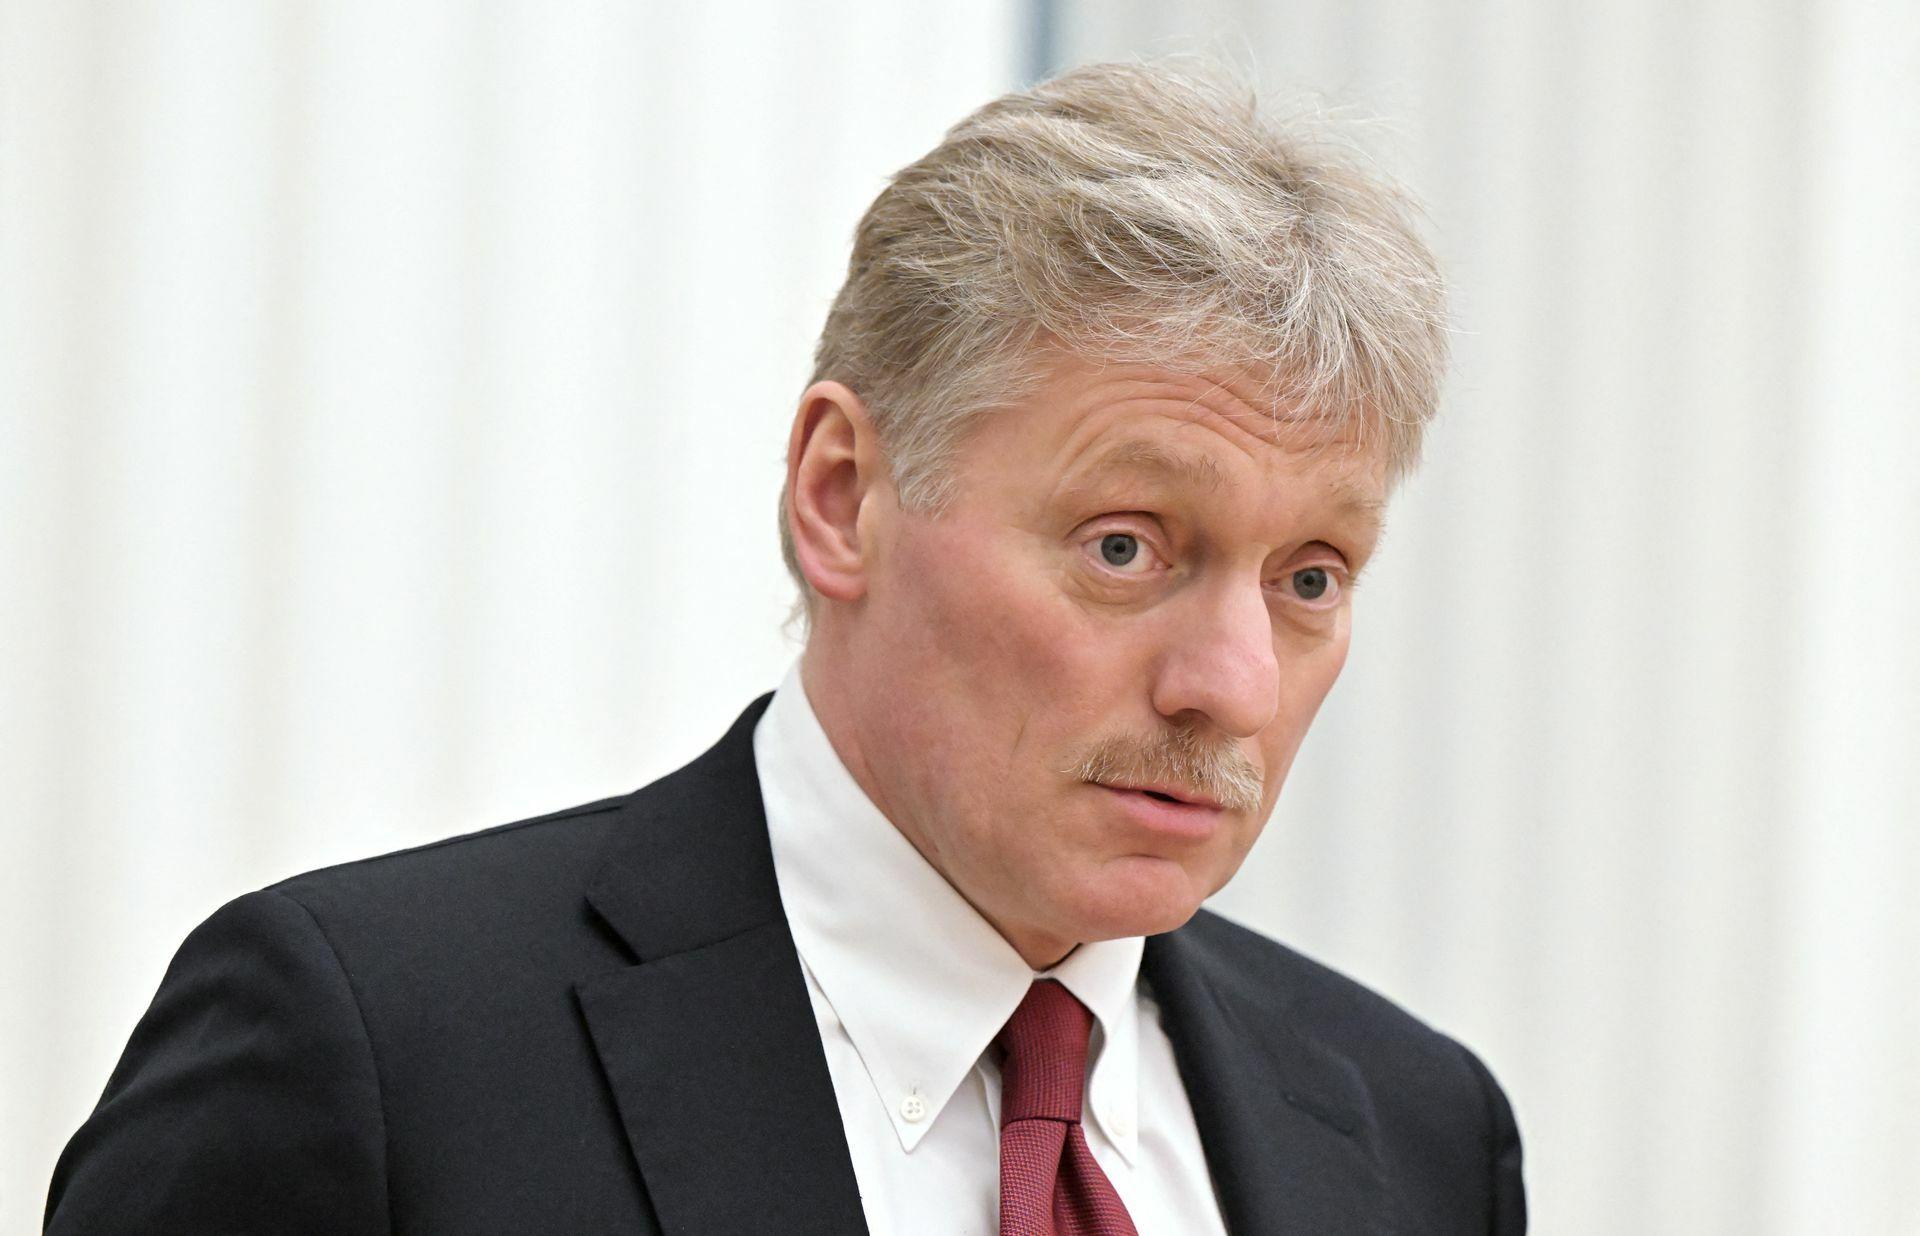 Kremeľ rázne odmietol Macronove vyjadrenia o narušení olympiády